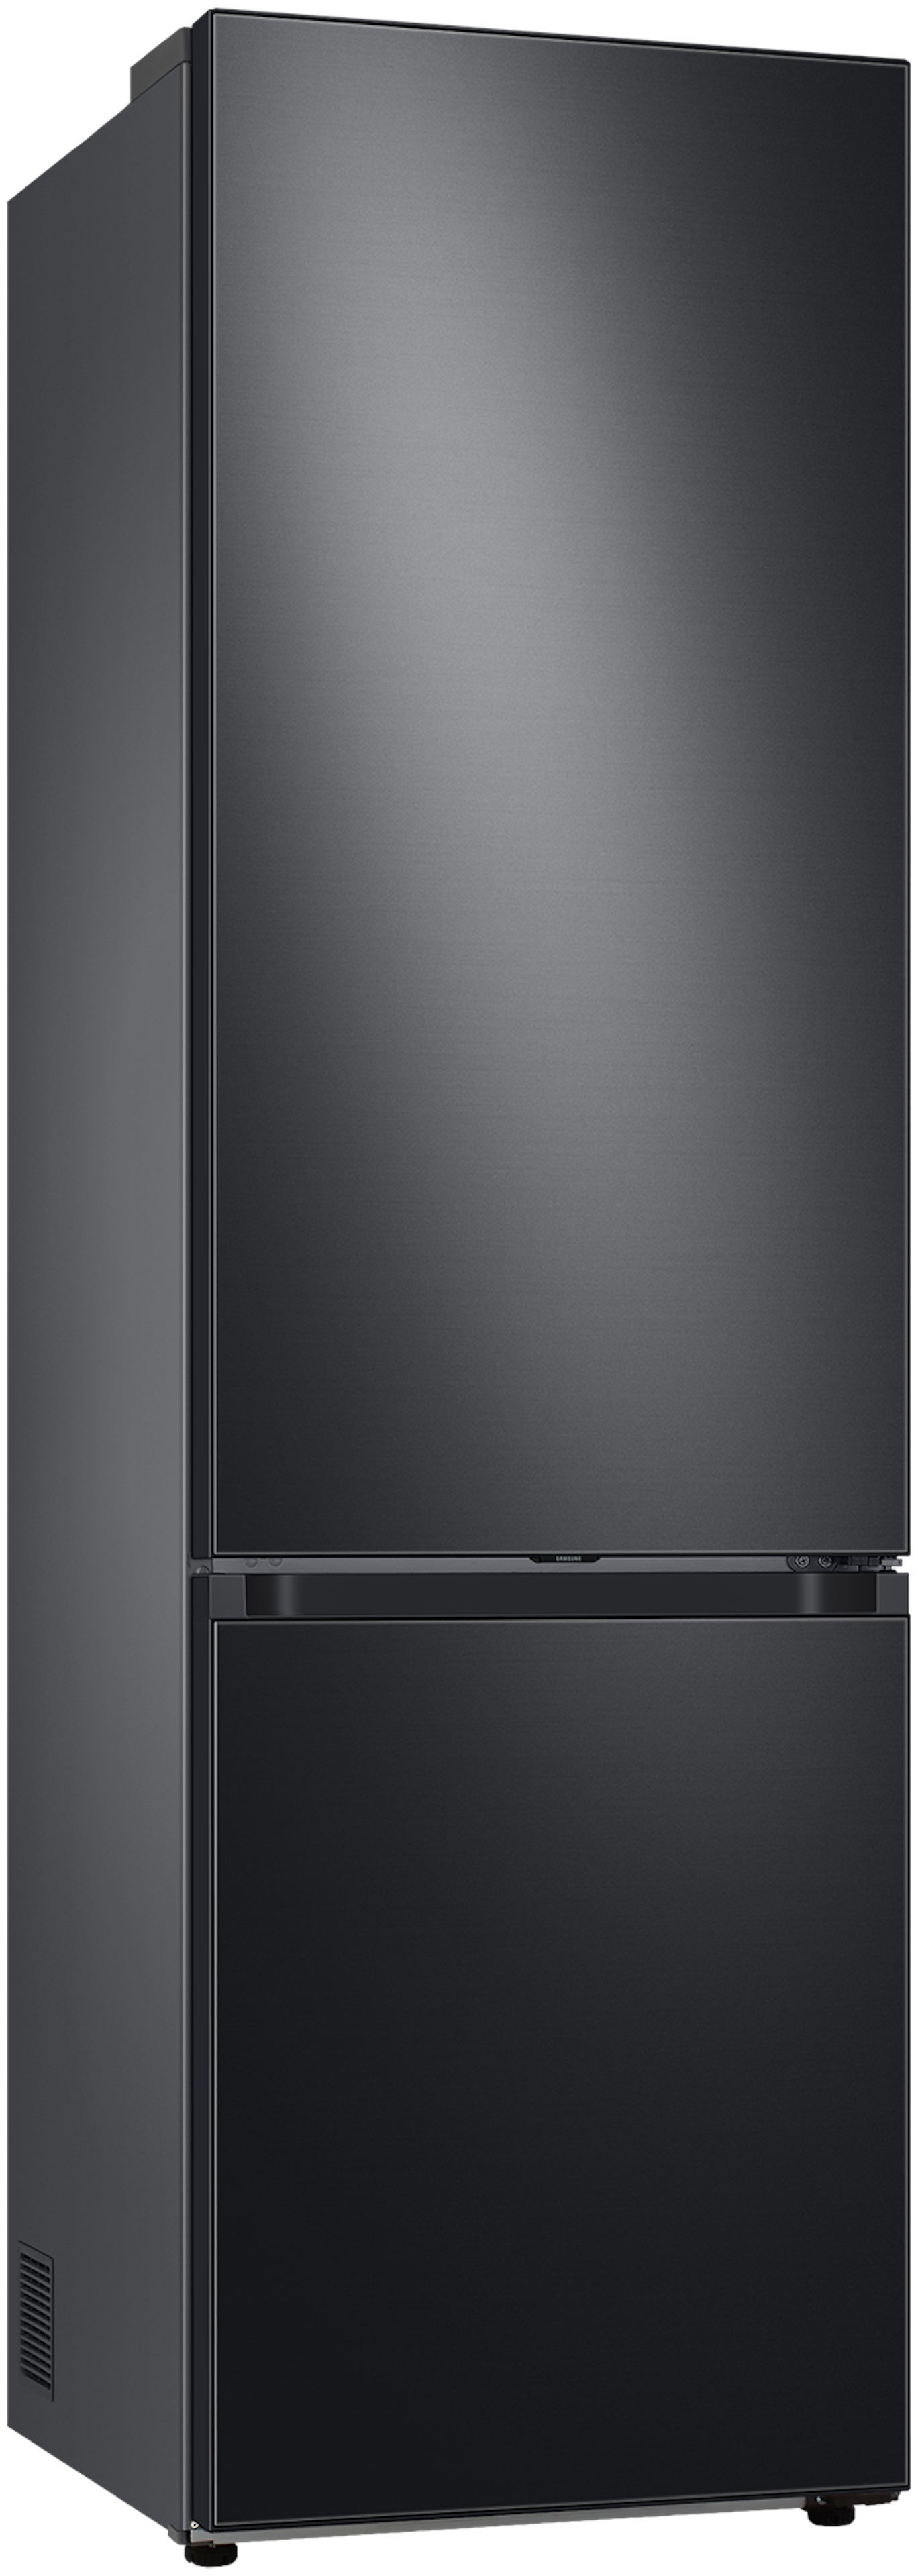 Samsung RB38C7B6CB1/EF vrijstaand koelkast afbeelding 6